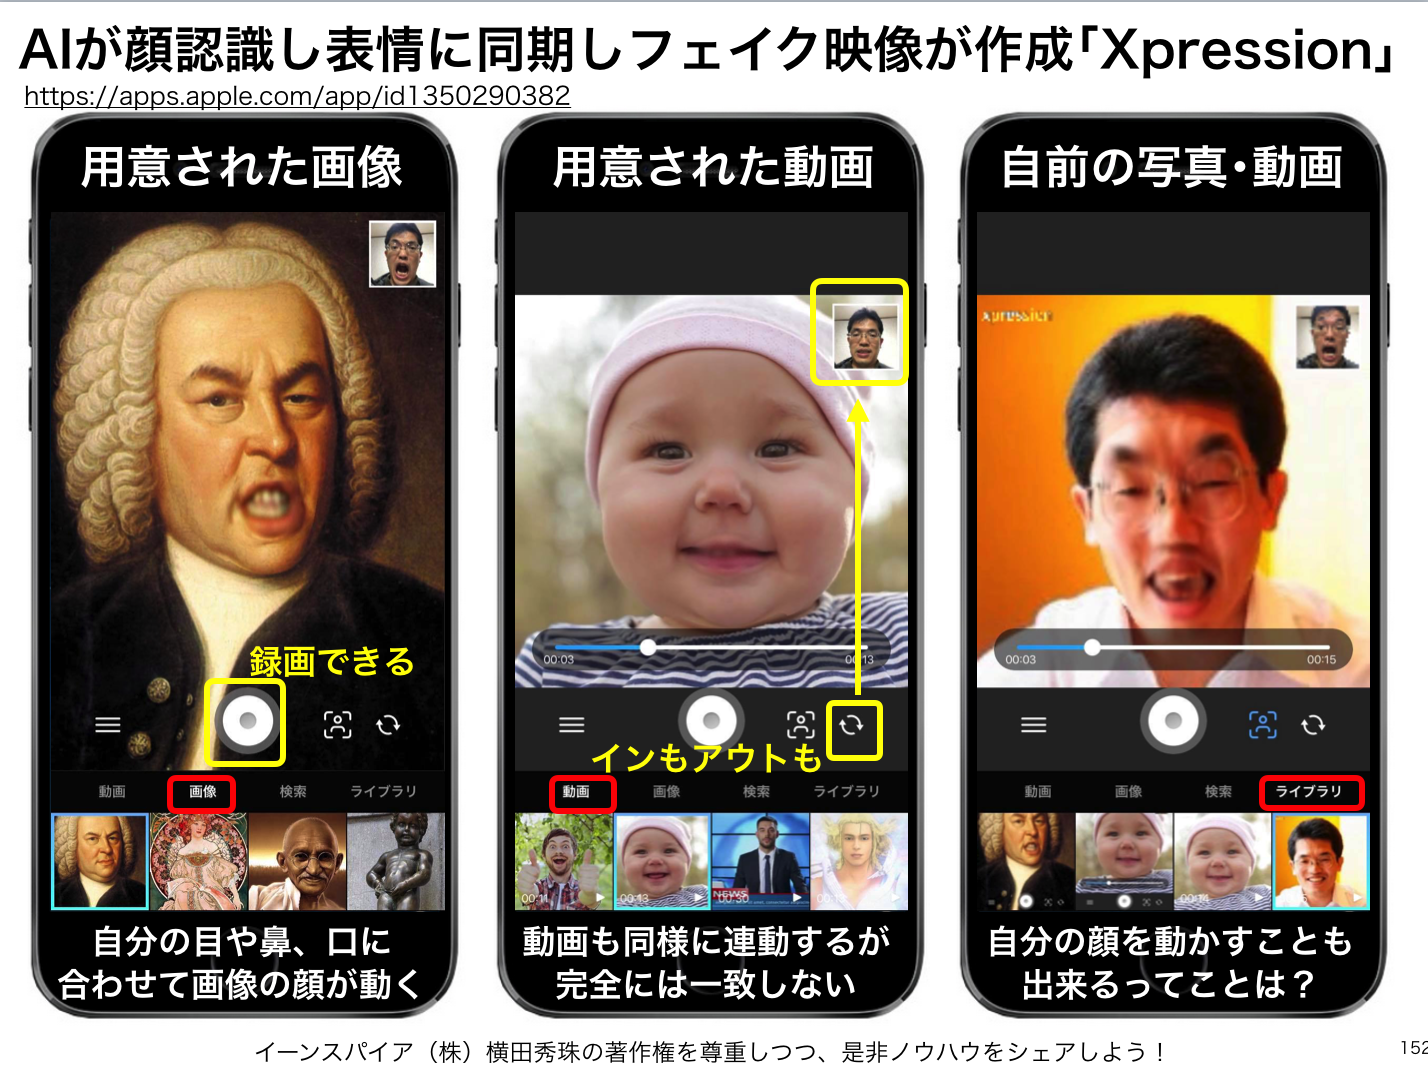 AIが顔認識し表情に同期しフェイク映像が作成｢Xpression｣